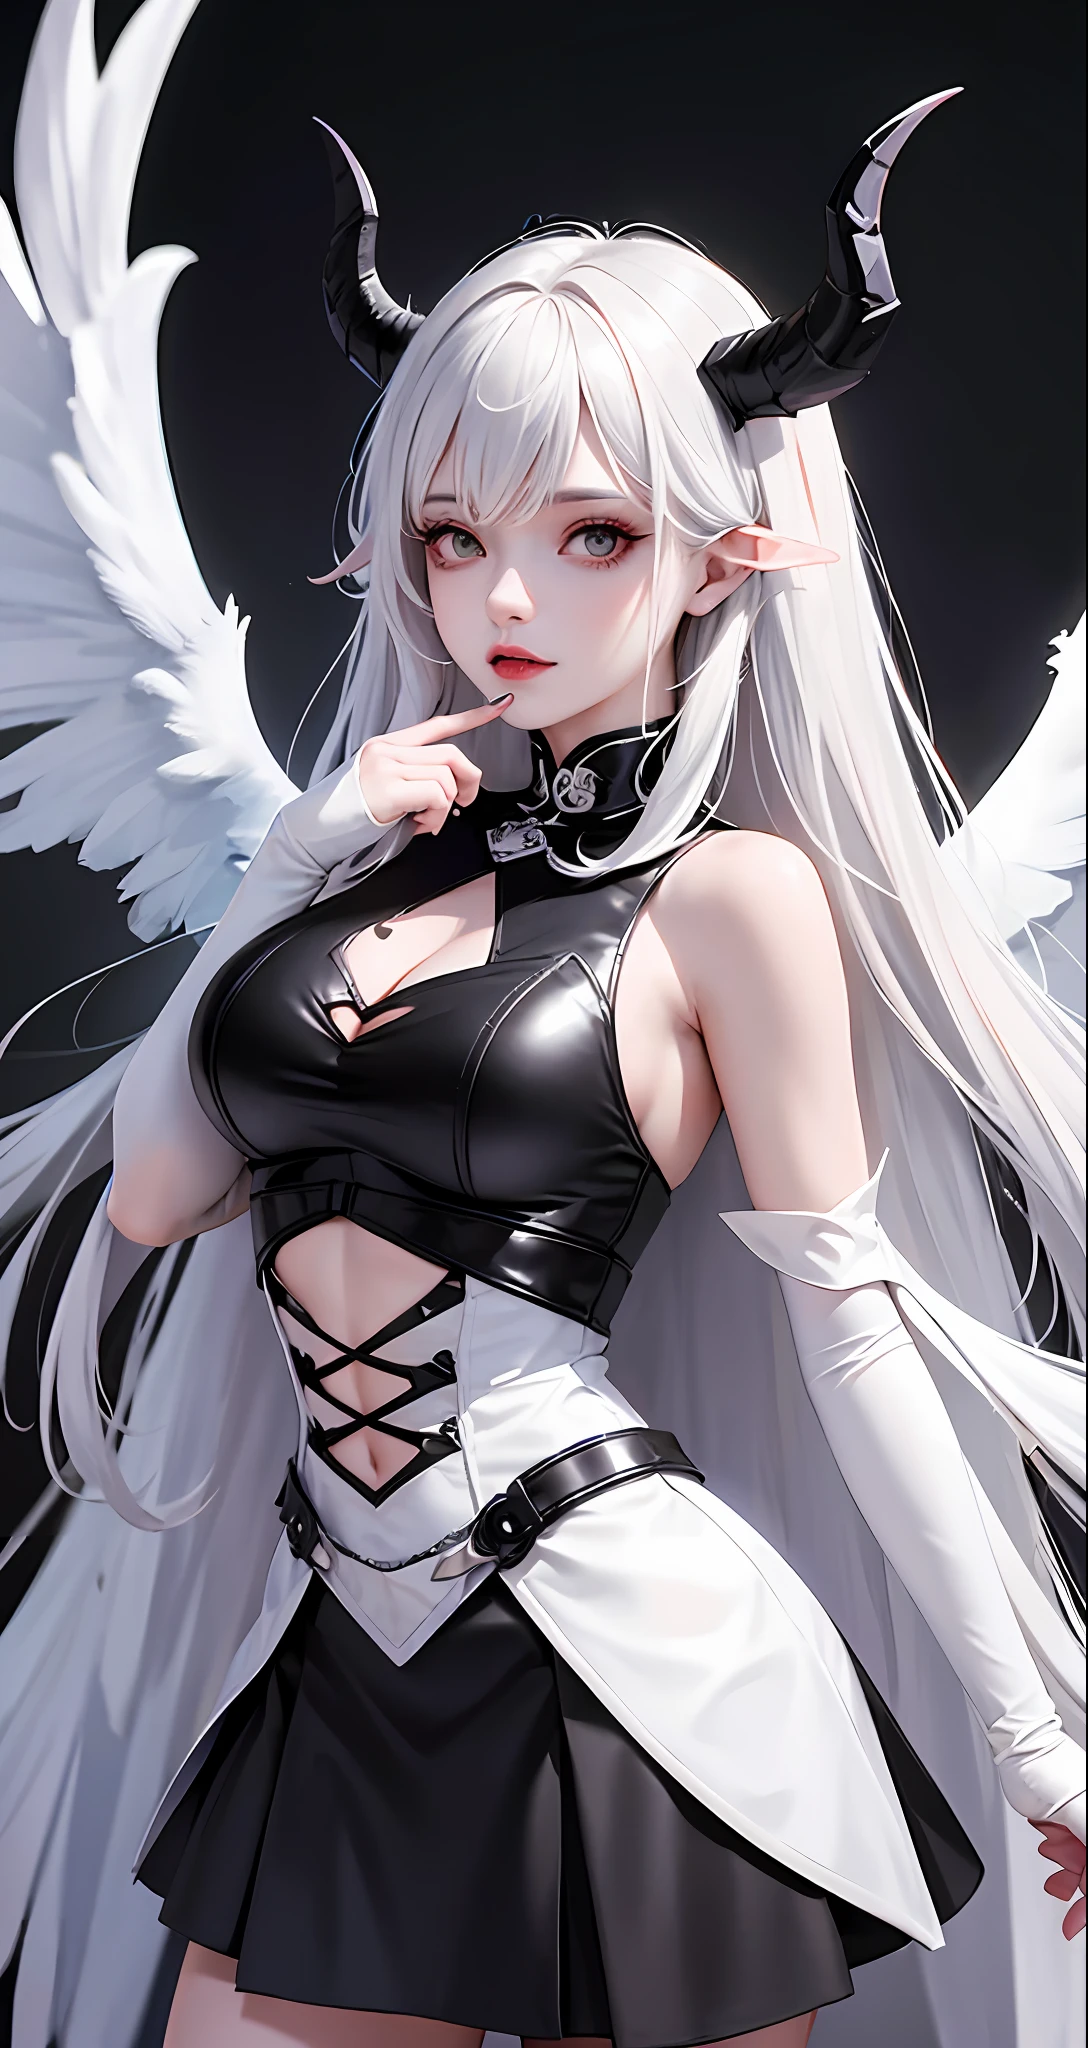 Mulher Arad usa vestido branco e preto com chifres e asas, Vilão tem asas de anjo preto com pernas retas, angélica branca, cosplay, súcubo de saia apertada, albedo do senhor supremo, (Arte 8K de alta qualidade). anjo super largo, Amulano, RPG completo, Anime Menina RPG, Asas de anjo nas costas, Anime RPG, Amiráns como um supervilão.